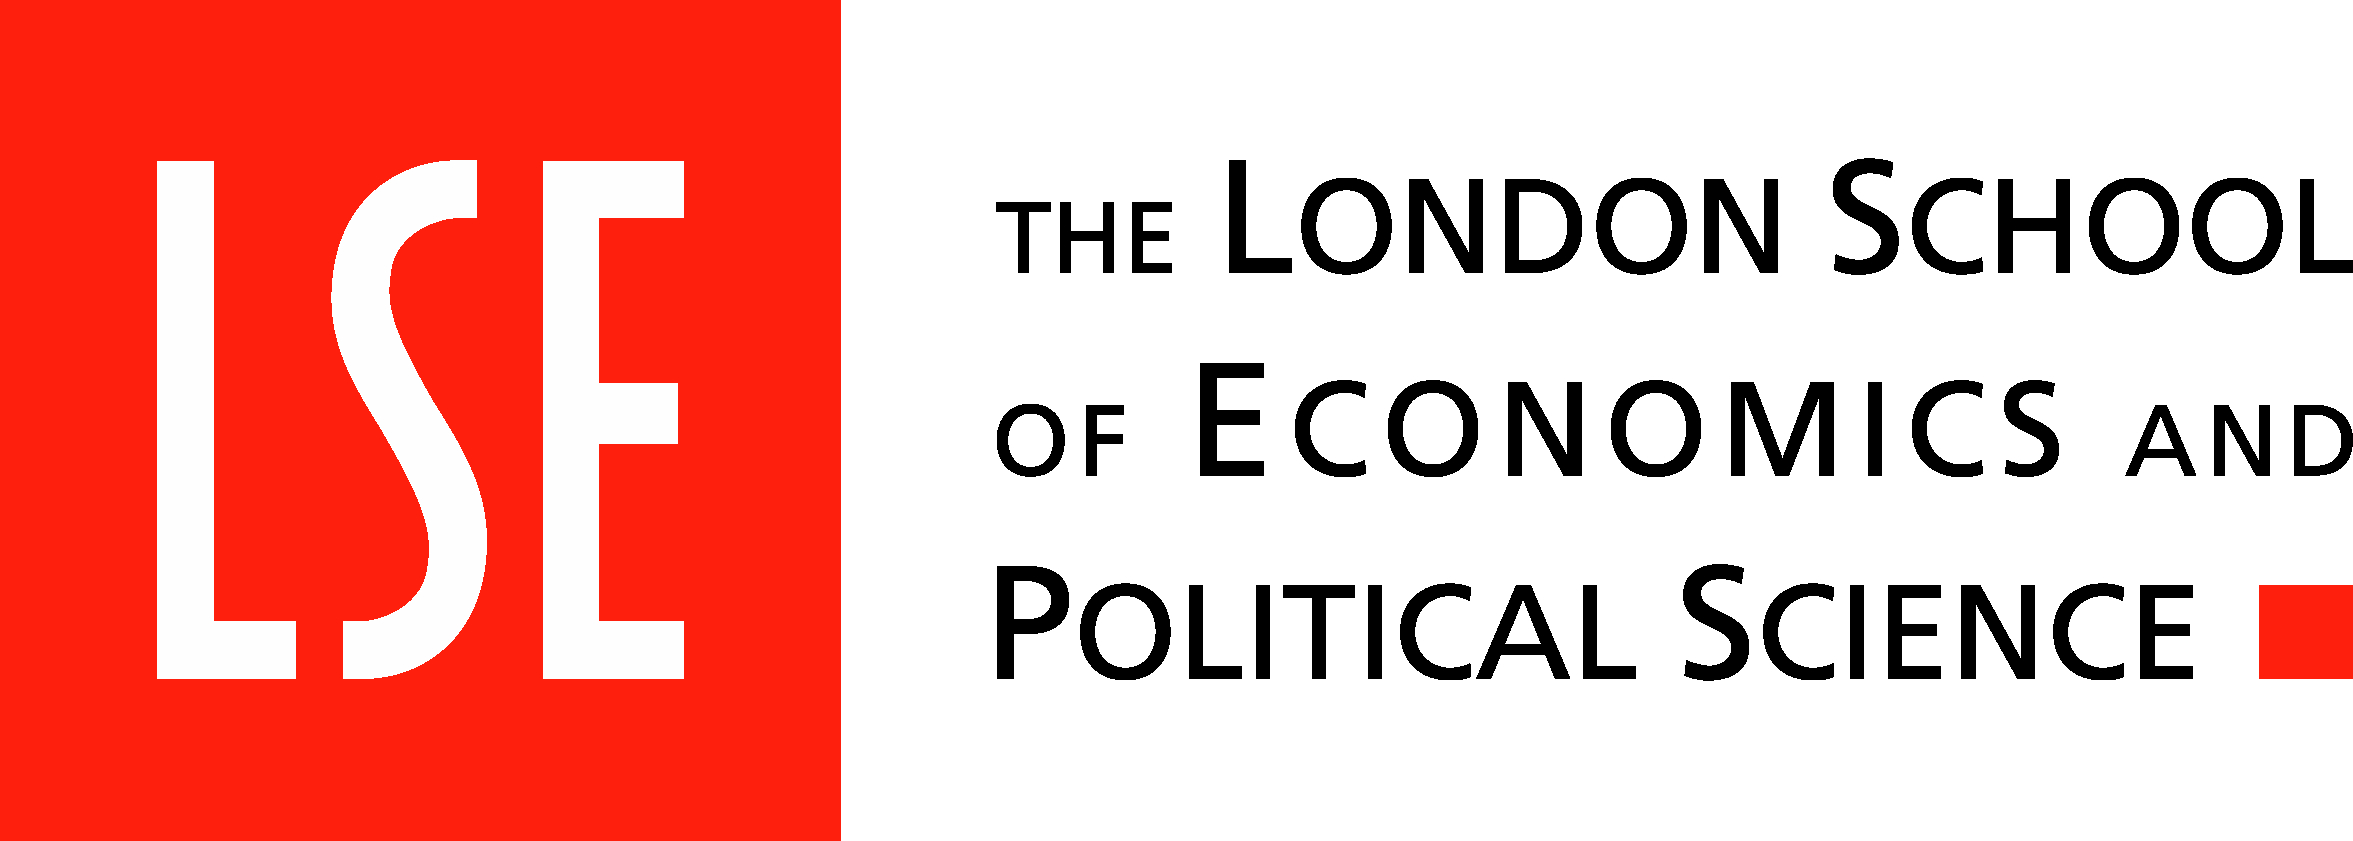 london school of economics thesis repository